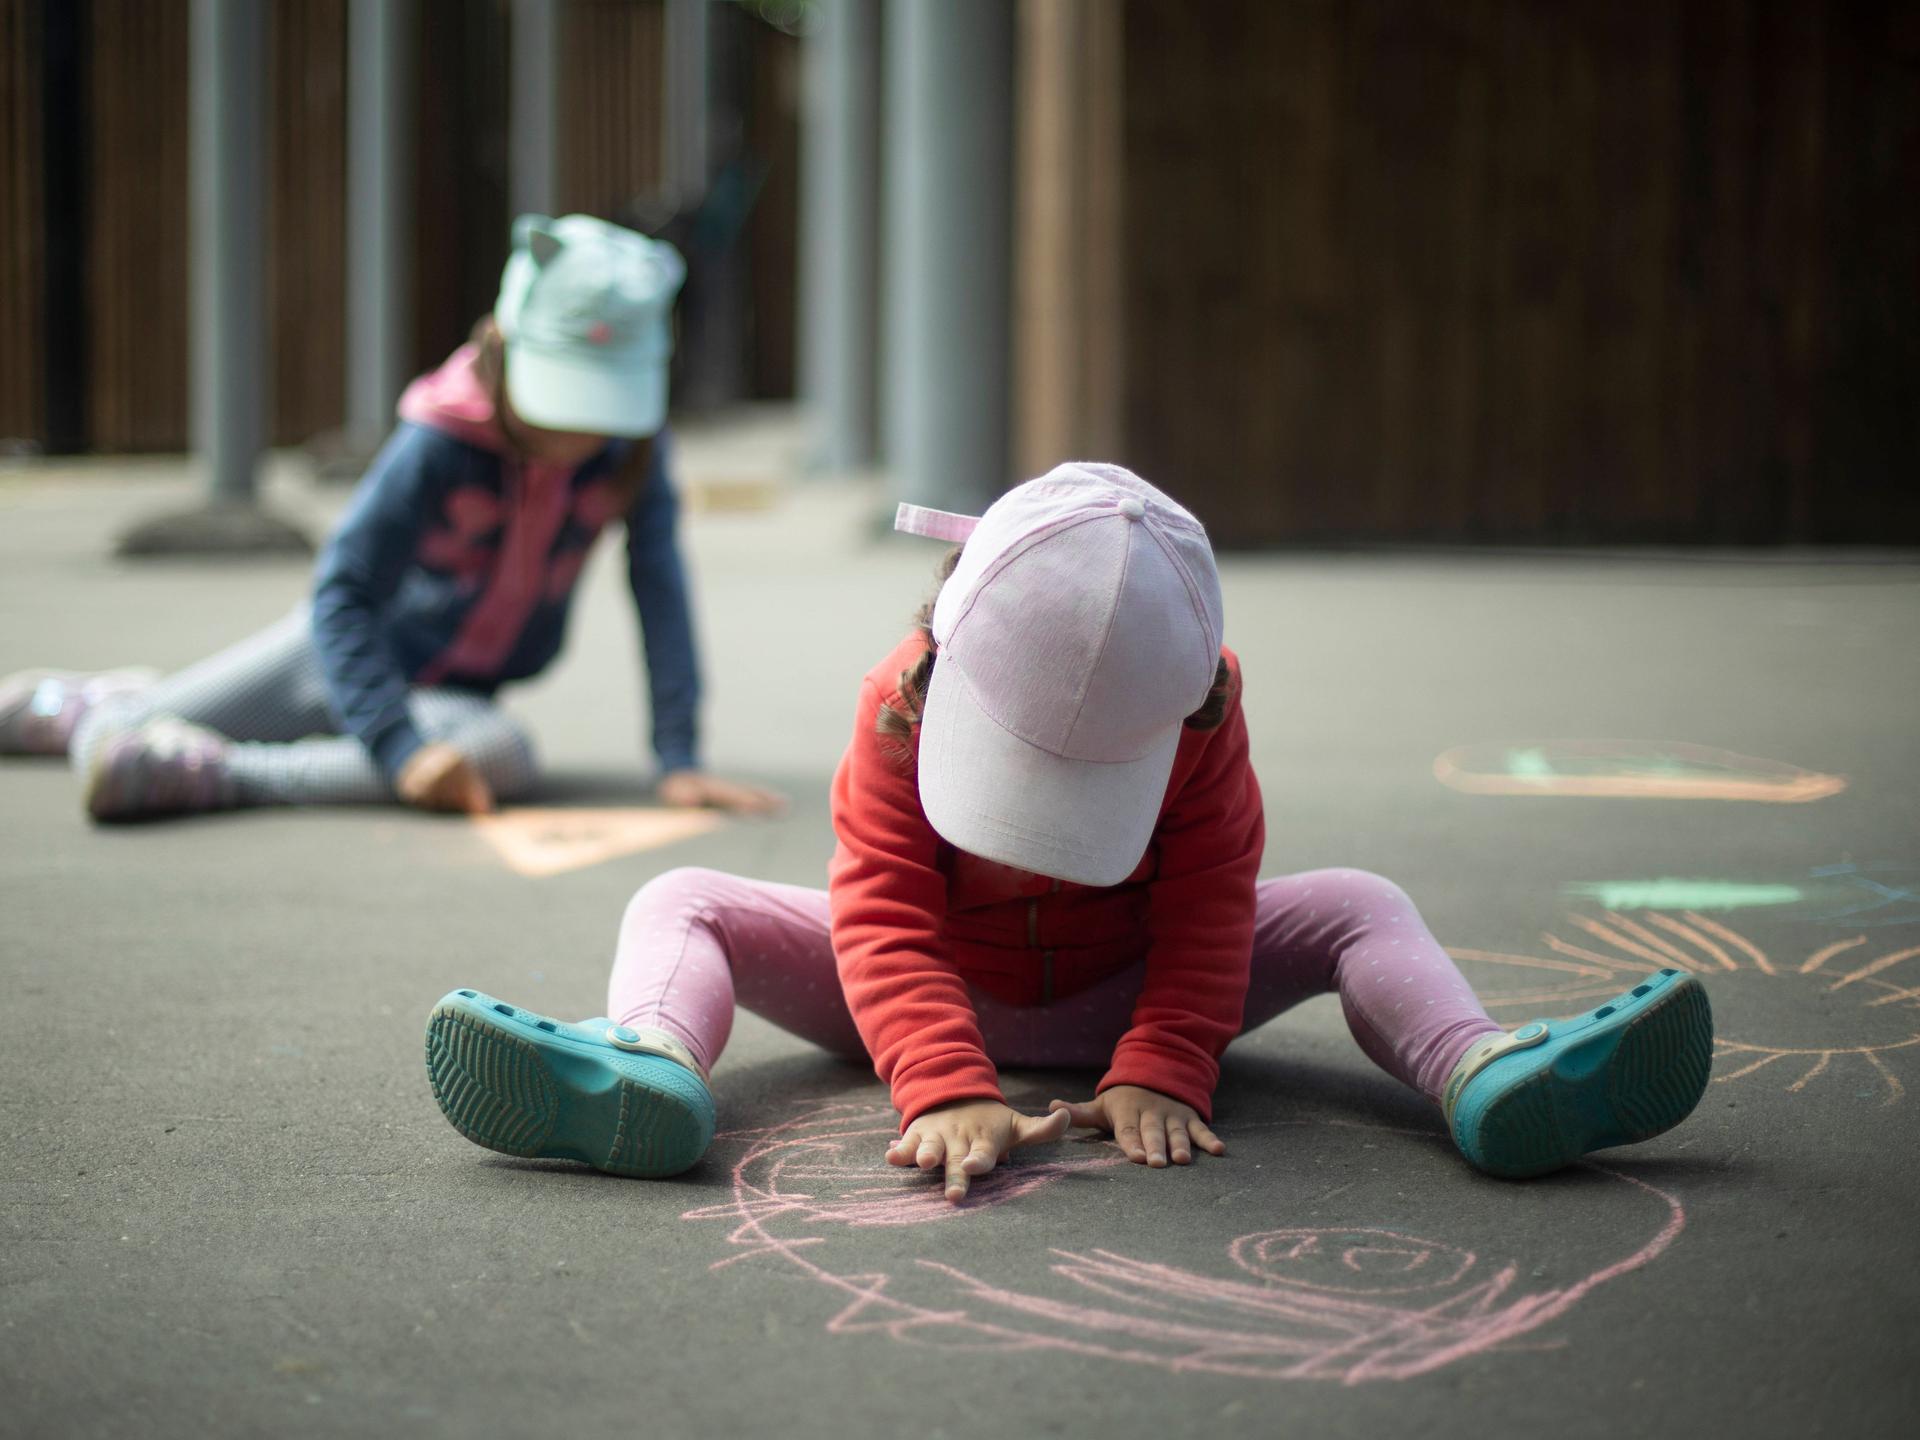 Kinder spielen und malen Kreide auf Asphalt.